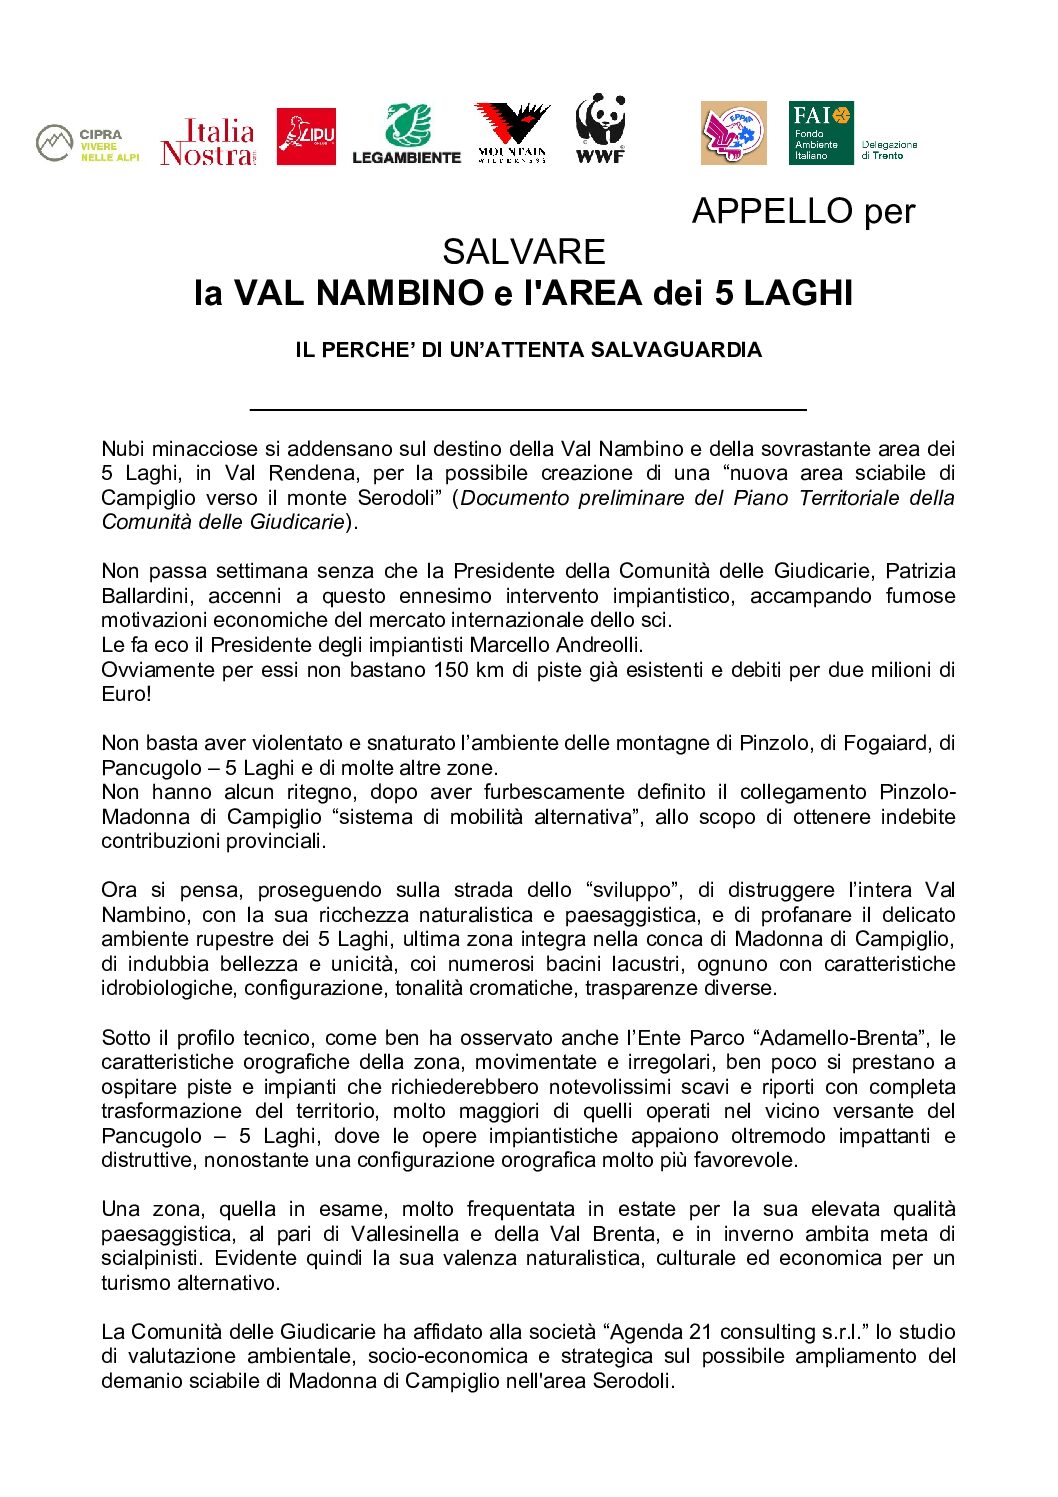 Appello per salvare la Val Nambino in Alta Val Rendena – Trentino